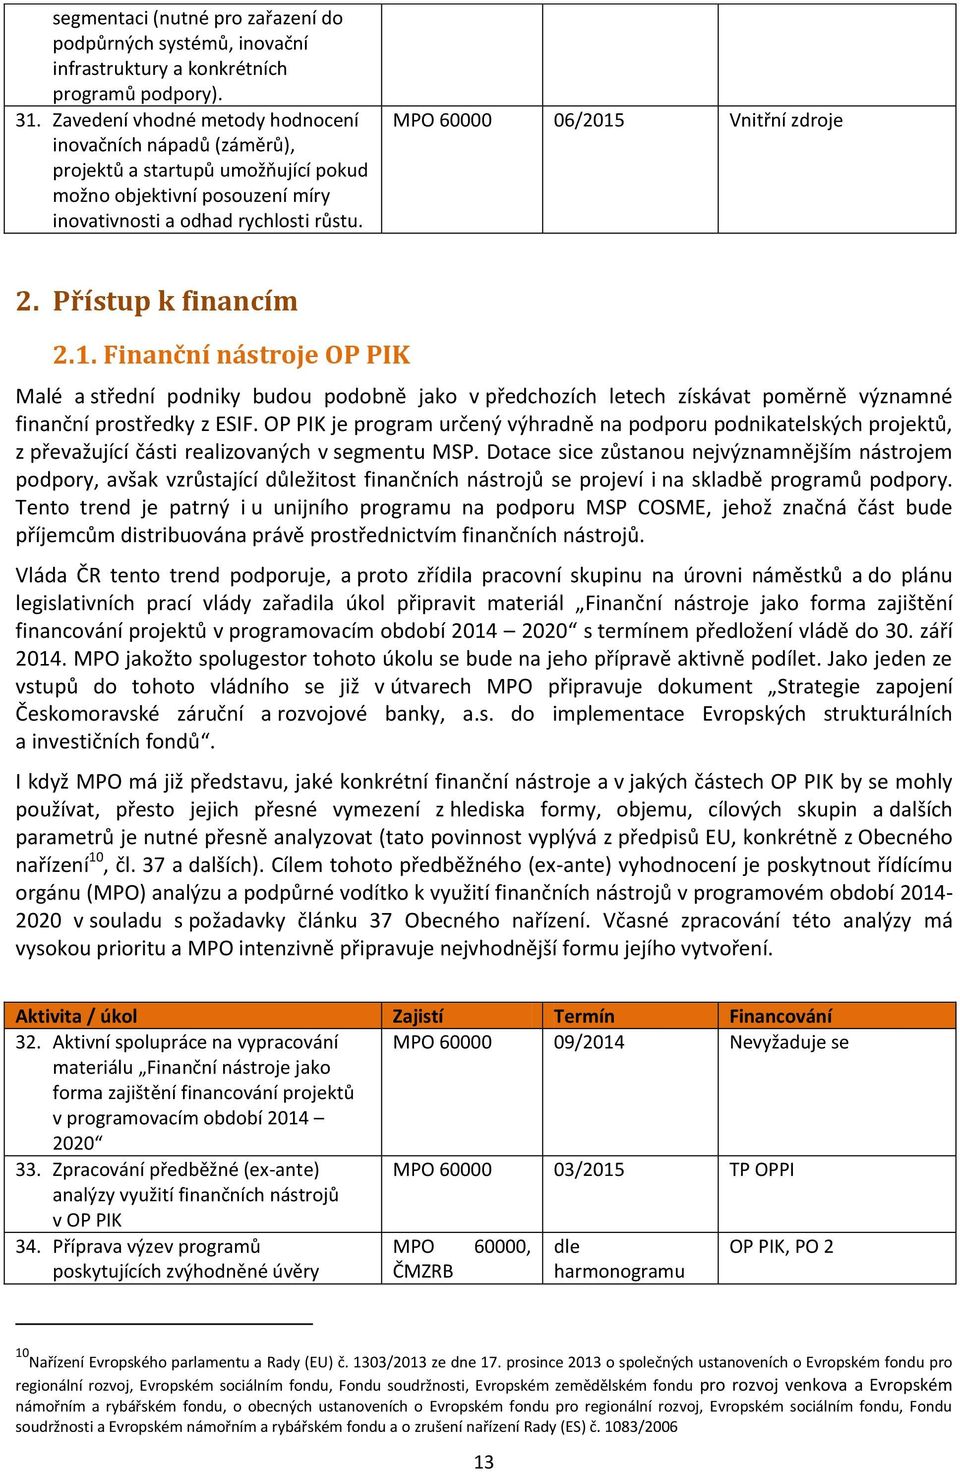 MPO 60000 06/2015 Vnitřní zdroje 2. Přístup k financím 2.1. Finanční nástroje OP PIK Malé a střední podniky budou podobně jako v předchozích letech získávat poměrně významné finanční prostředky z ESIF.